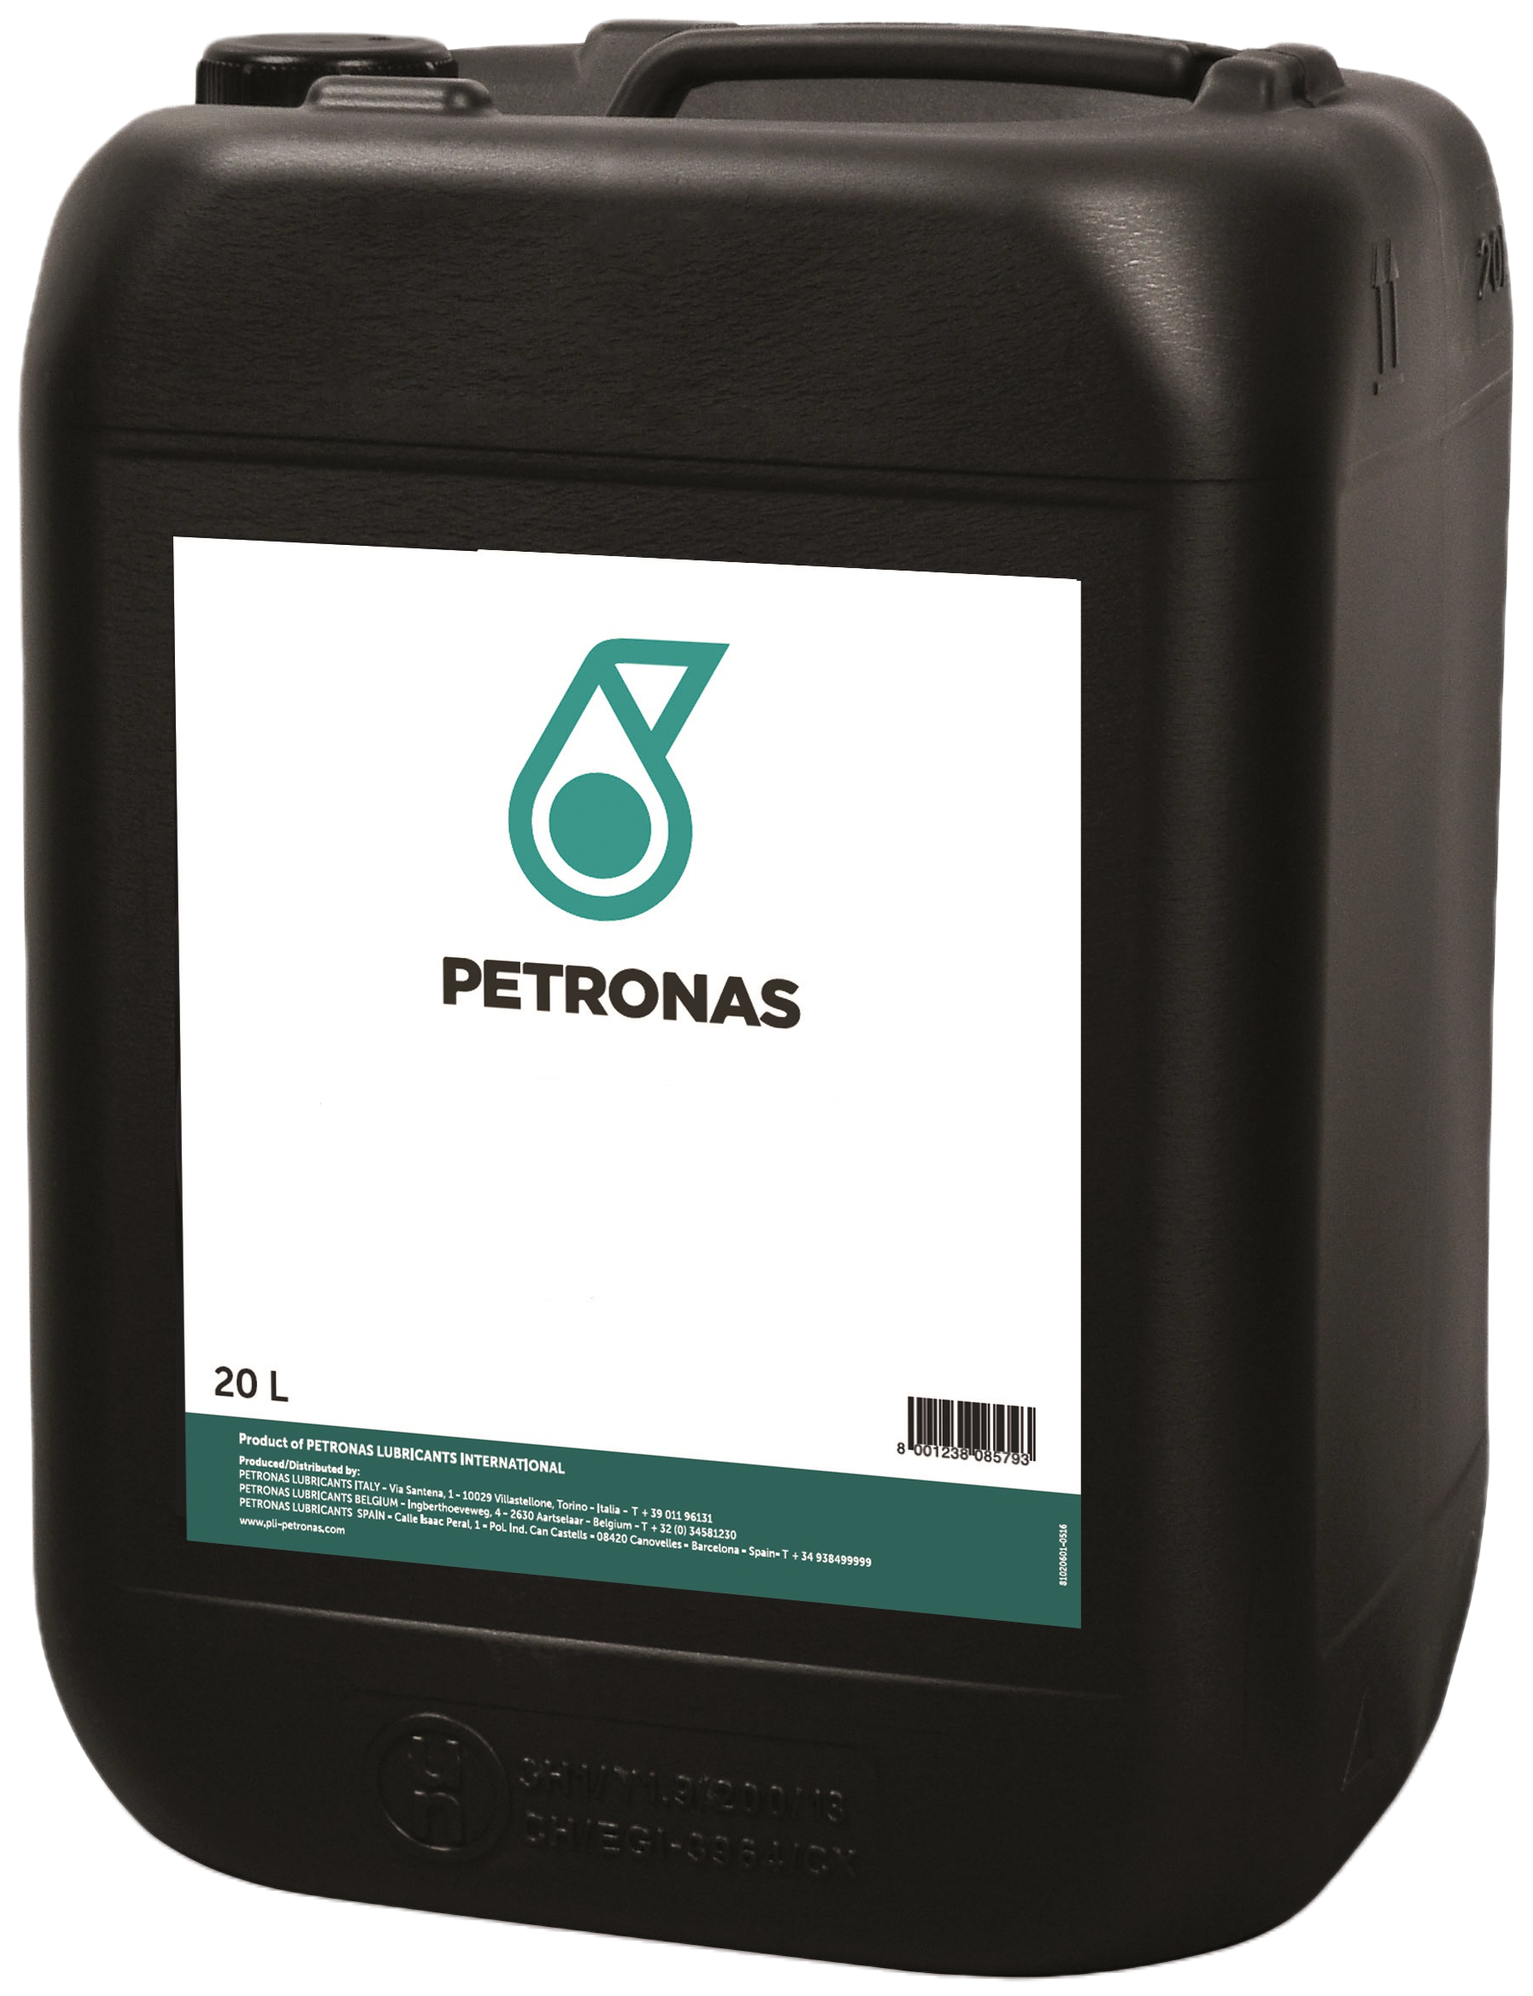 P475P1910-20 Petronas Hydraulic HLPD Serie is een gamma van hydrauliekoliën met zeer hoge prestaties en bescherming tegen slijtage.